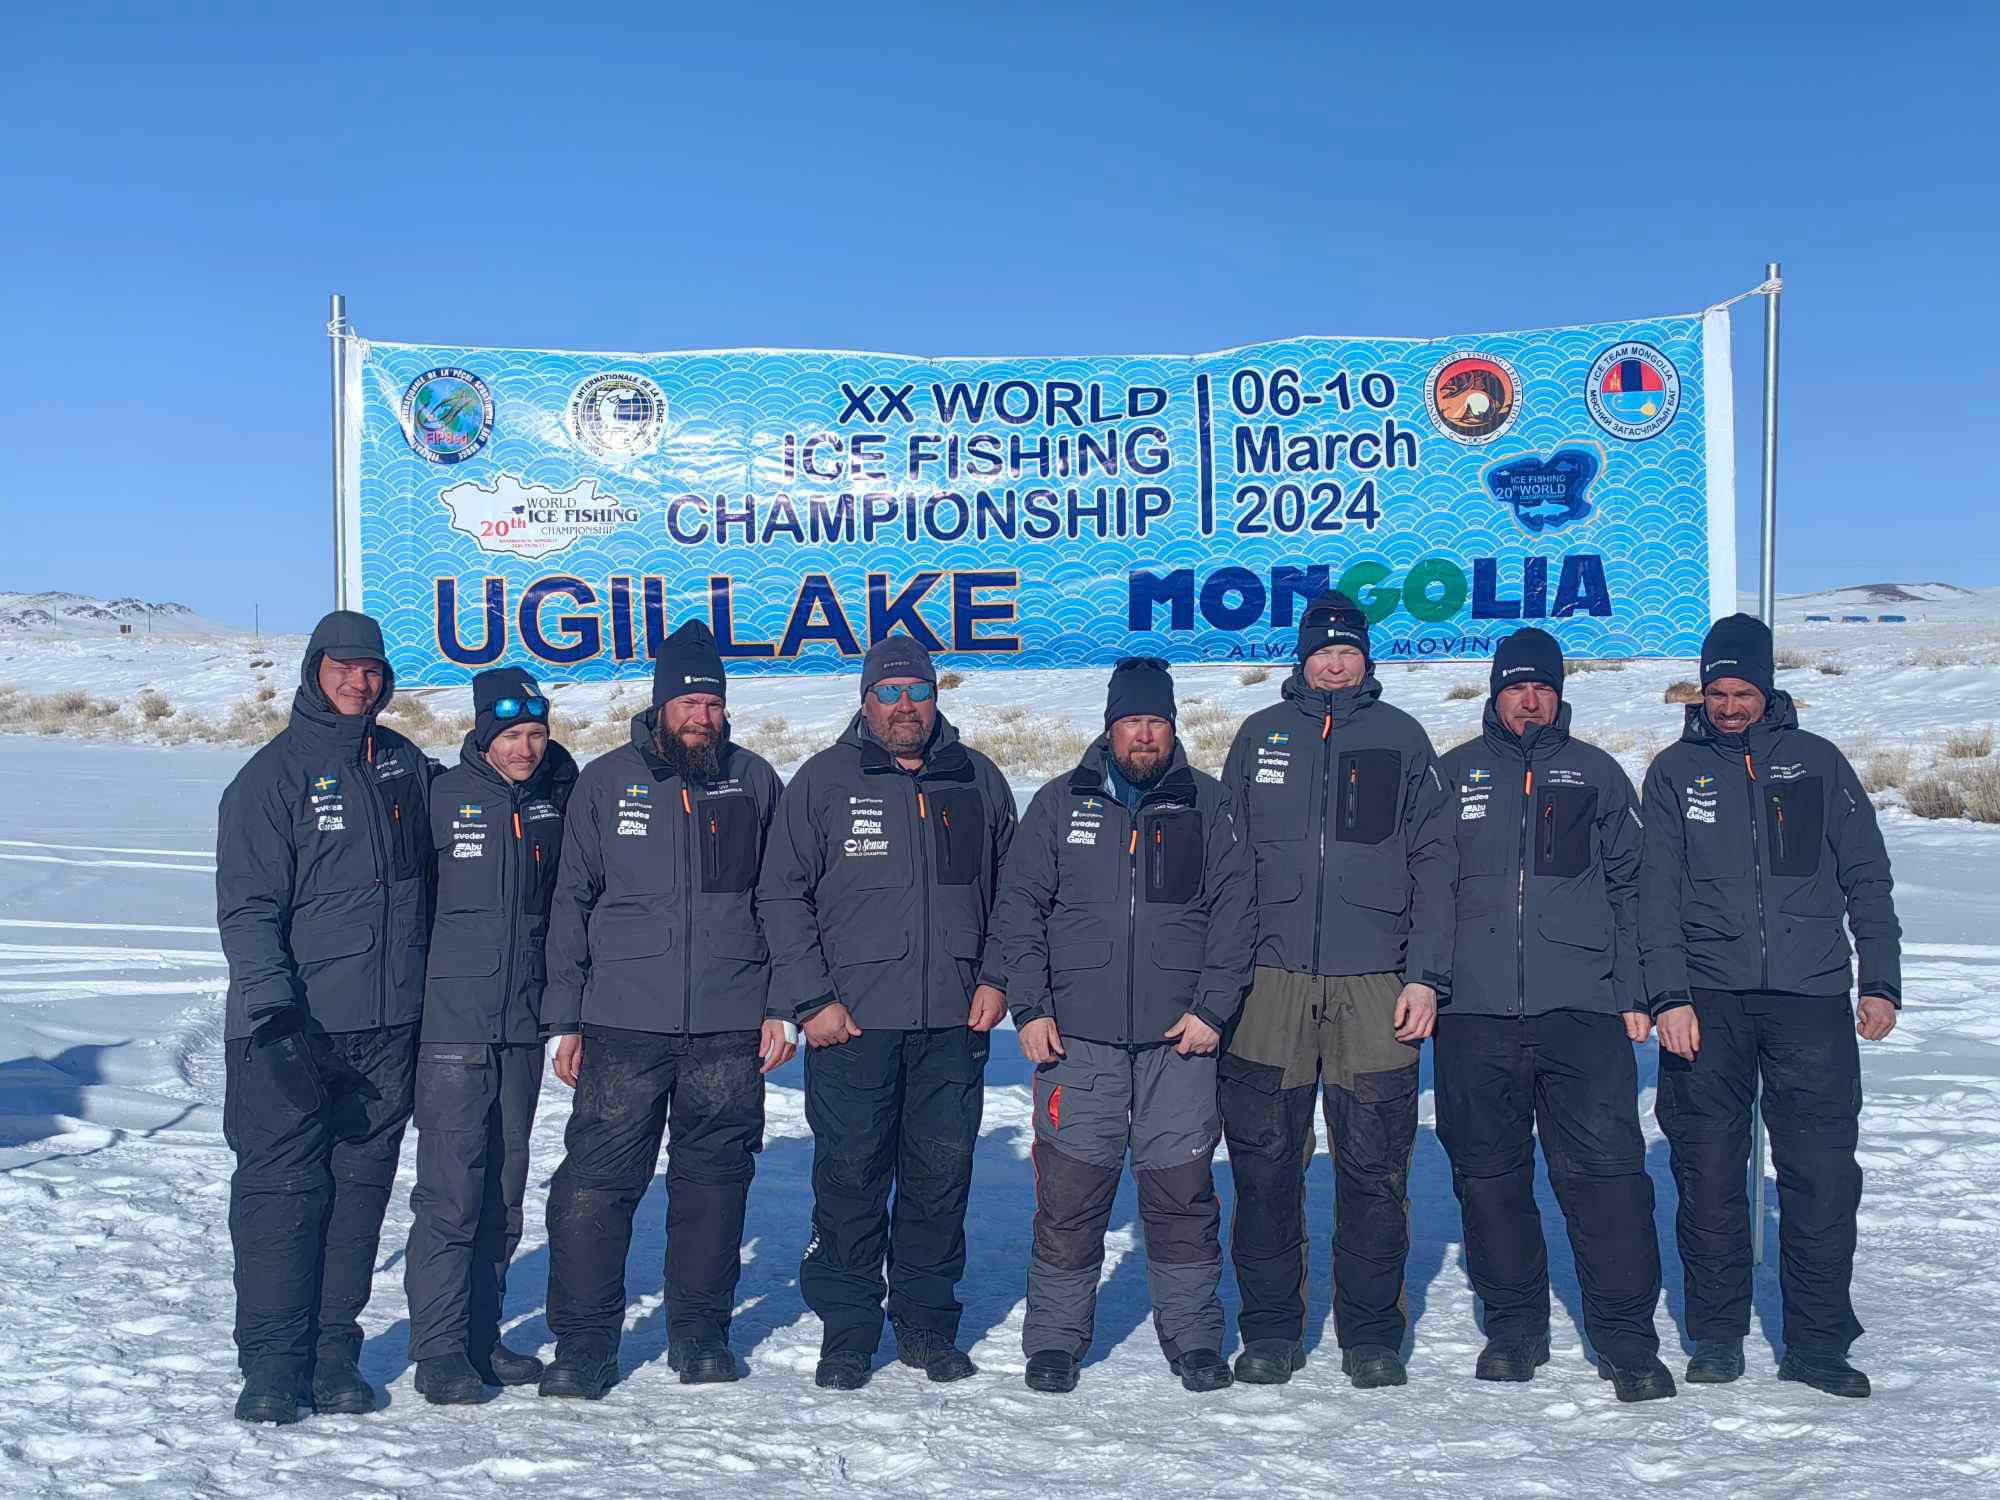 20th World Ice Fishing Championship VM i isfiske avgjort 9-10 Mars i Mongoliet. Sverige slutar på en nionde plats.